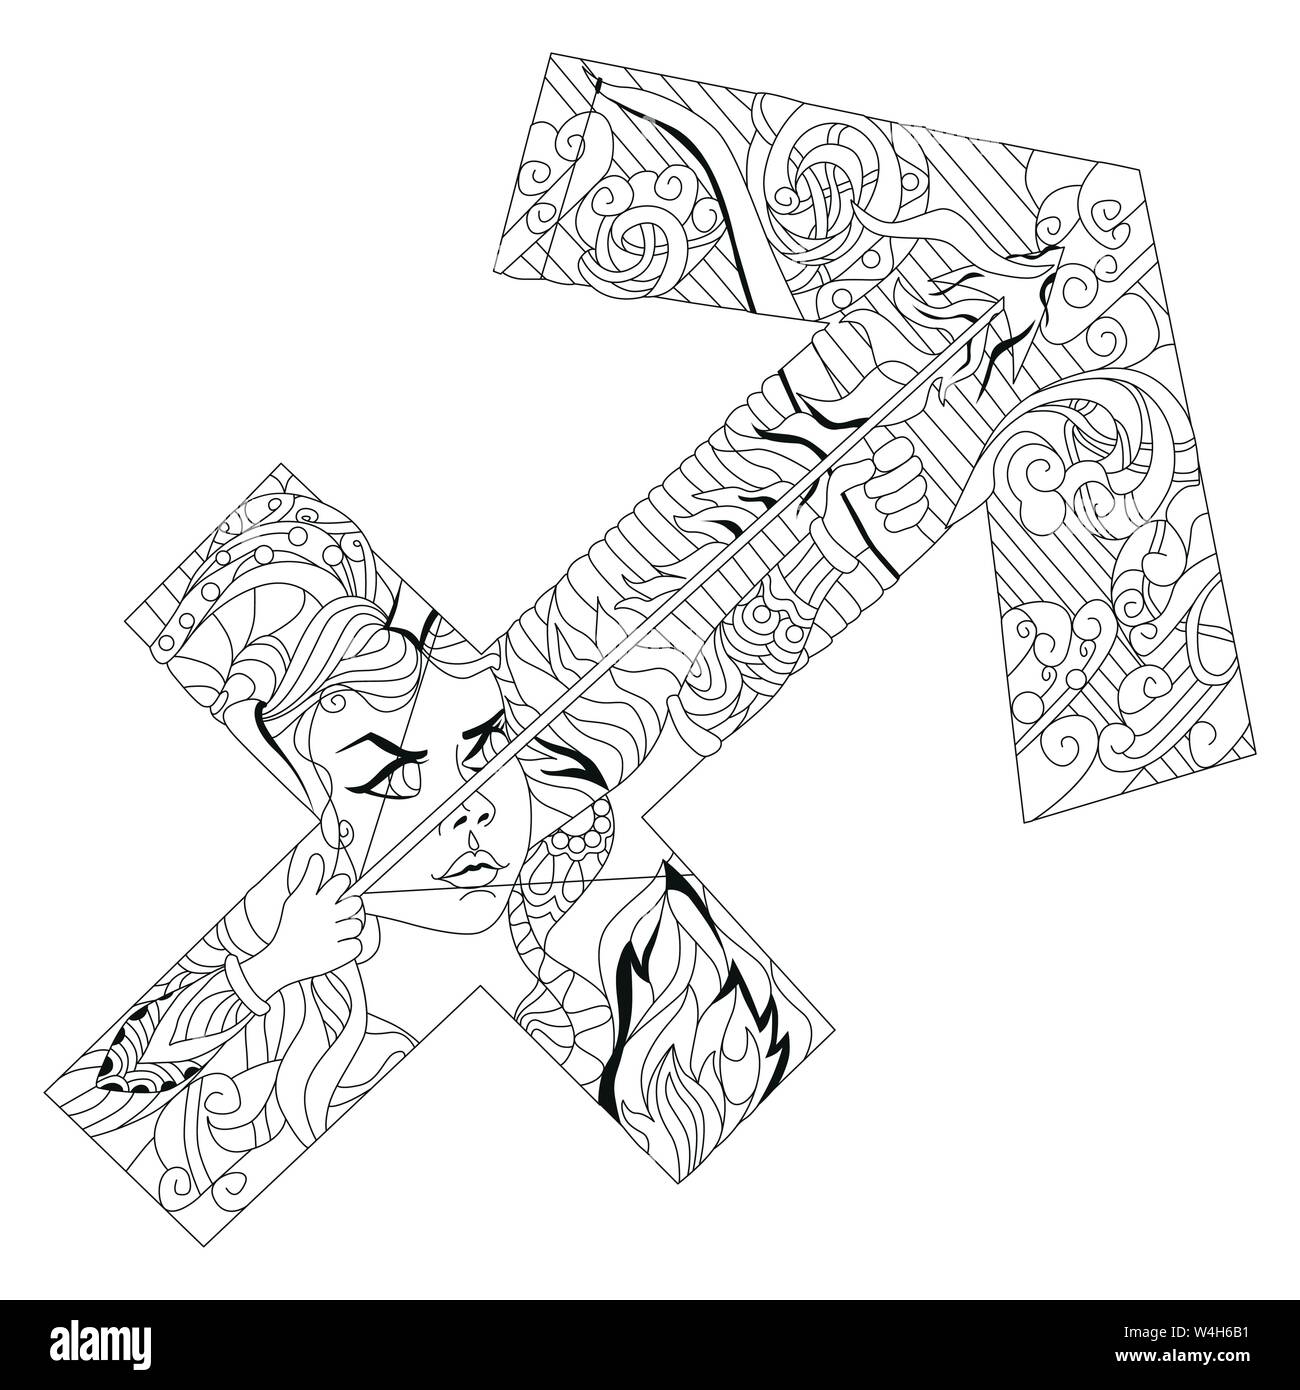 Schütze Sternzeichen, Astrologie Konzept Art Tattoo Design  Stock-Vektorgrafik - Alamy